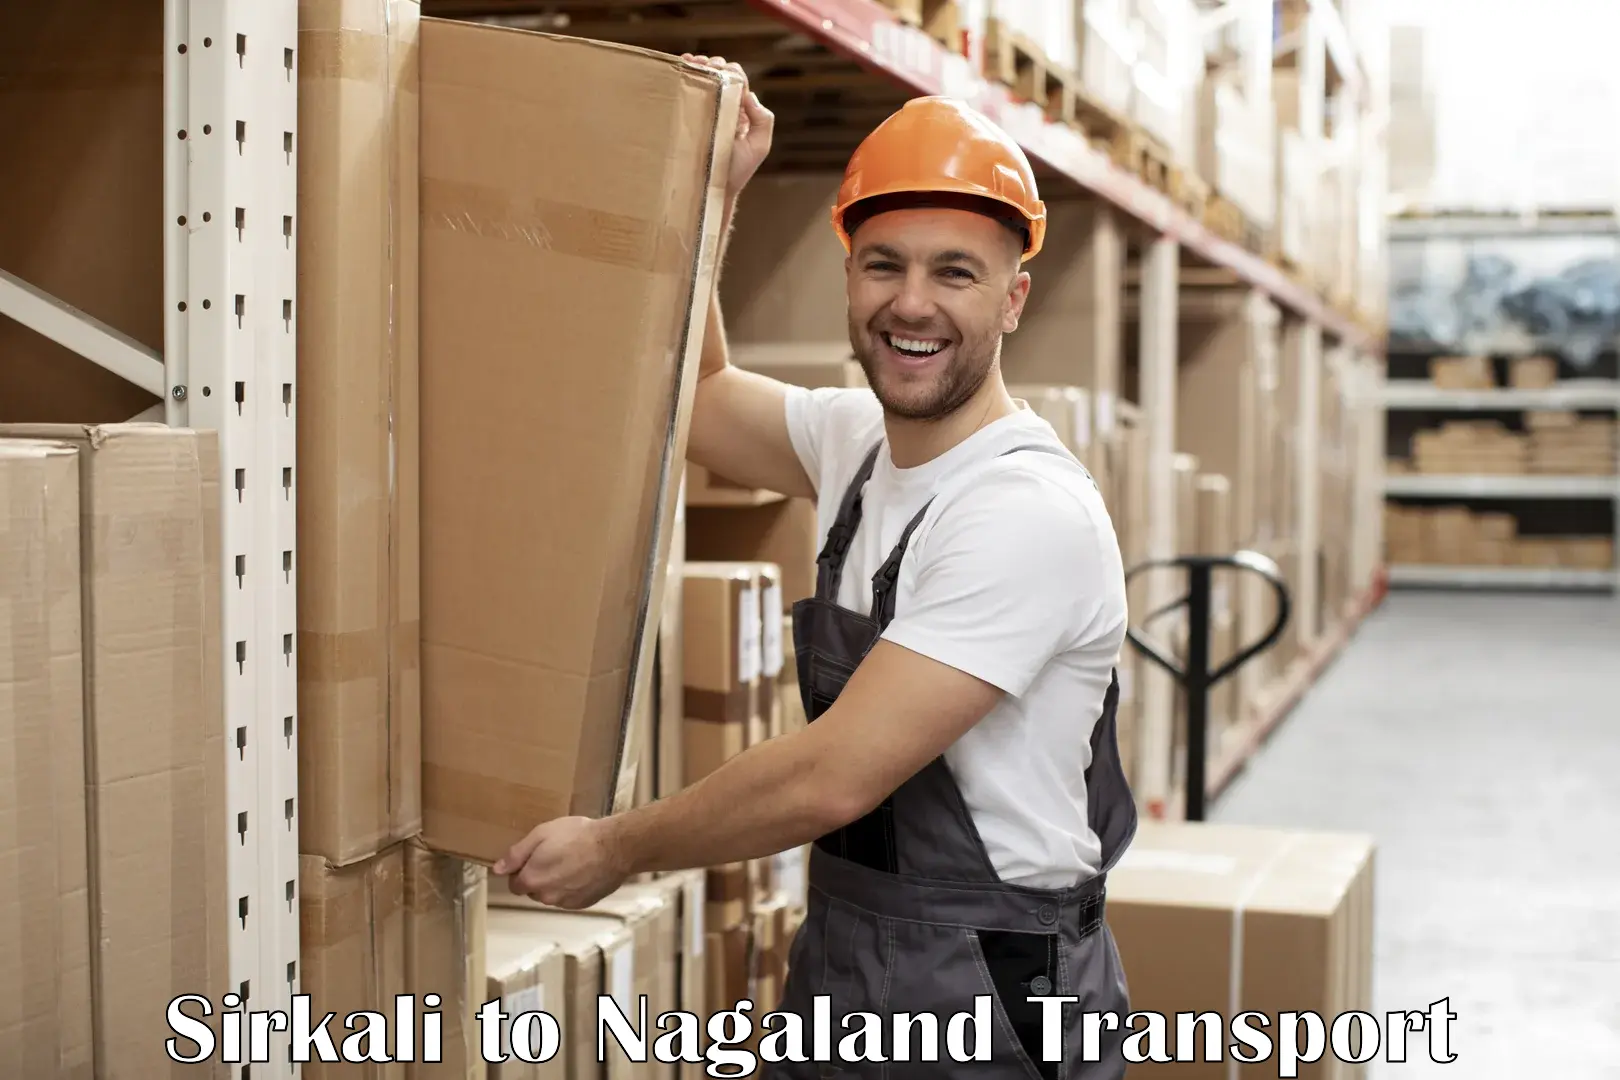 Road transport online services Sirkali to Nagaland